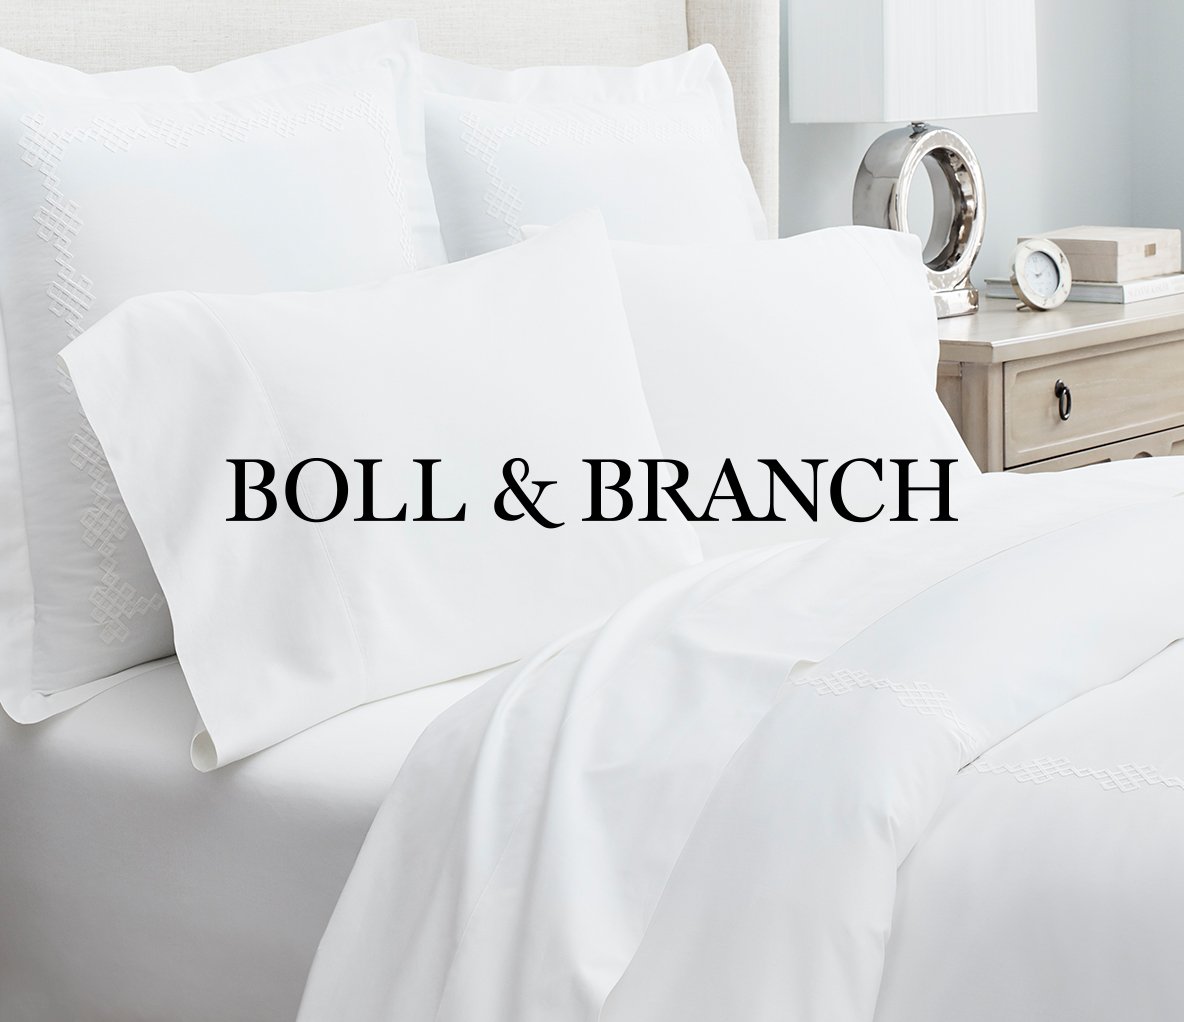 Boll & Branch Headless Dev